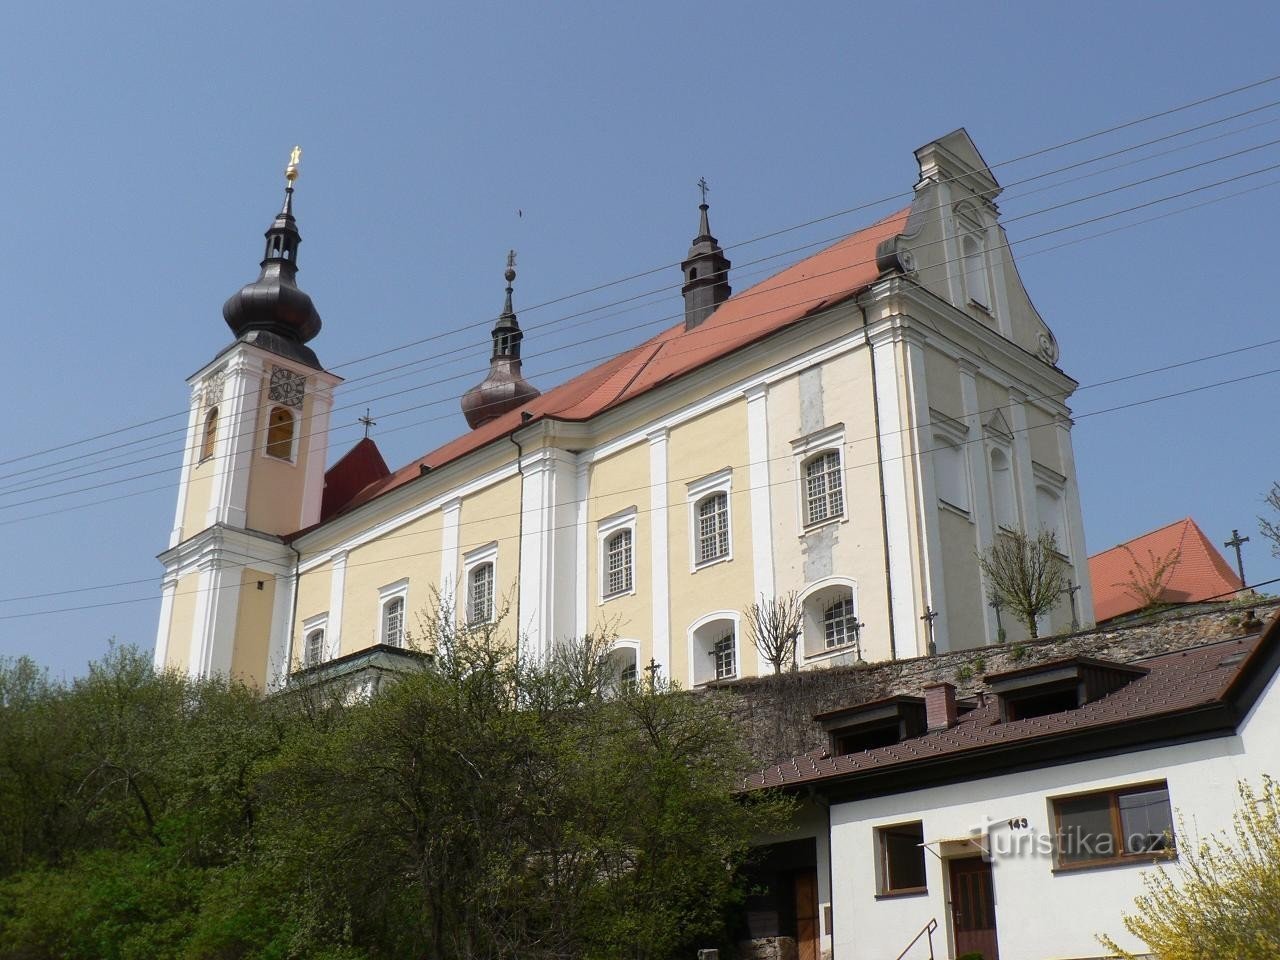 Nuovo Regno, chiesa del monastero da sud-est